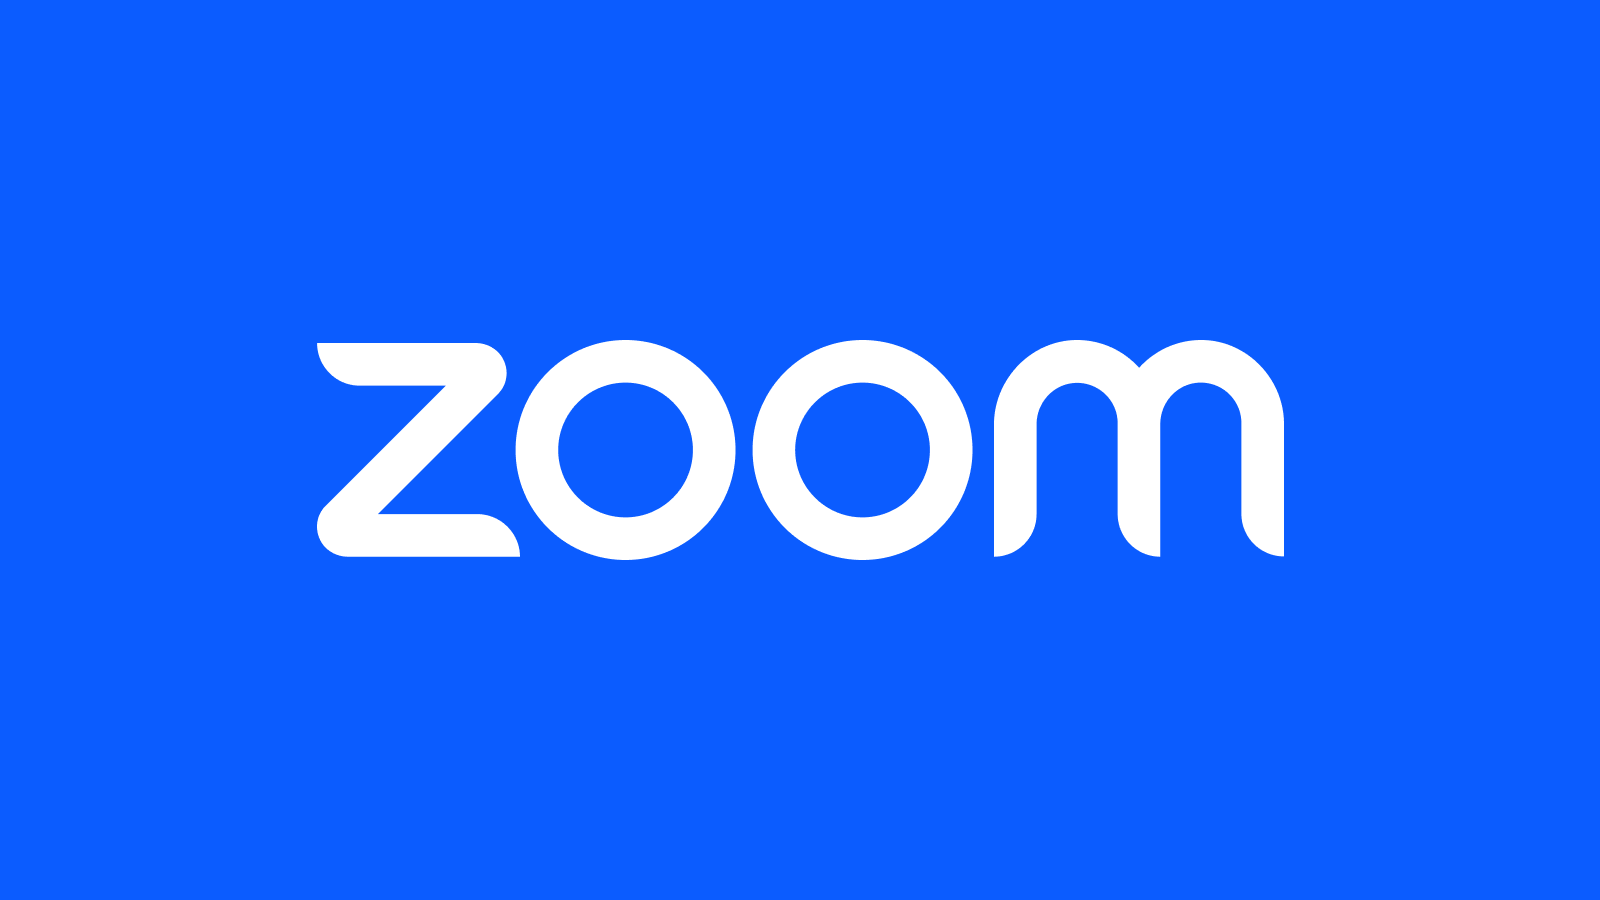 Zoom har ändrat sina användarvillkor igen och tagit bort omnämnandet av artificiell intelligens därifrån